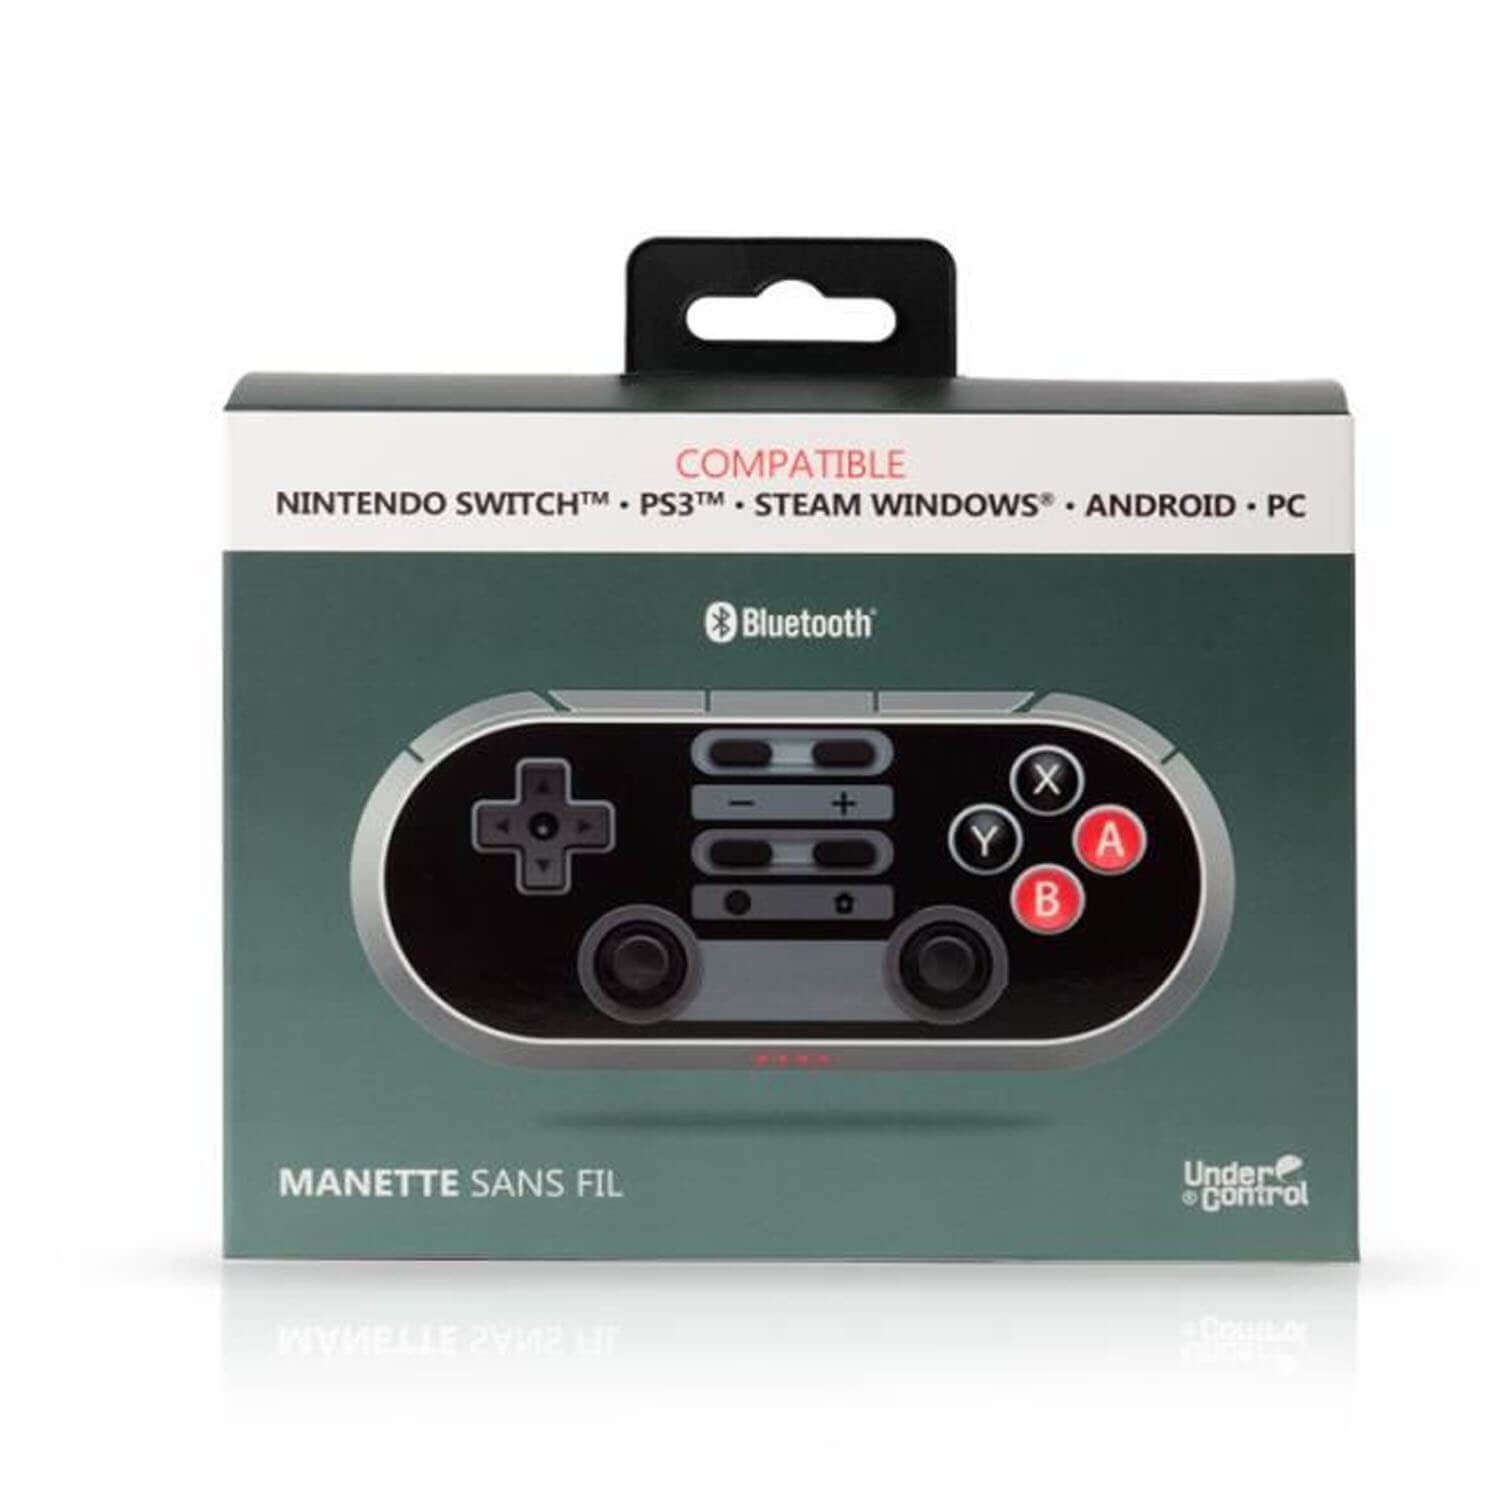 Manette sans fil Bluetooth compatible Nintendo Switch /